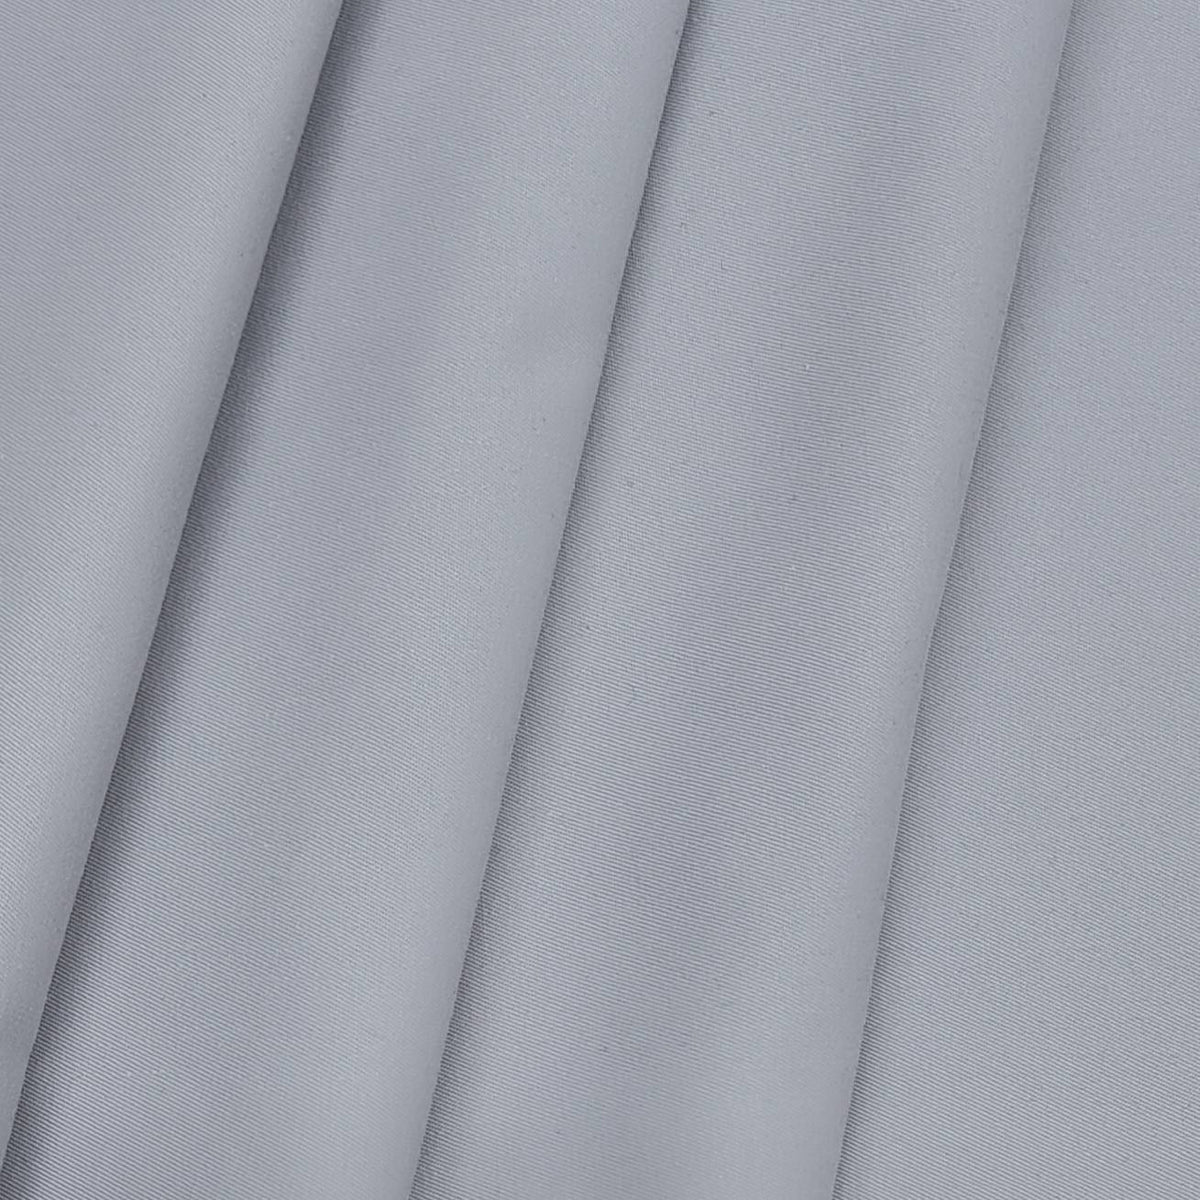 ManTire Men's Cotton Blended Premium Solid Trouser Fabric (Colour Silver)